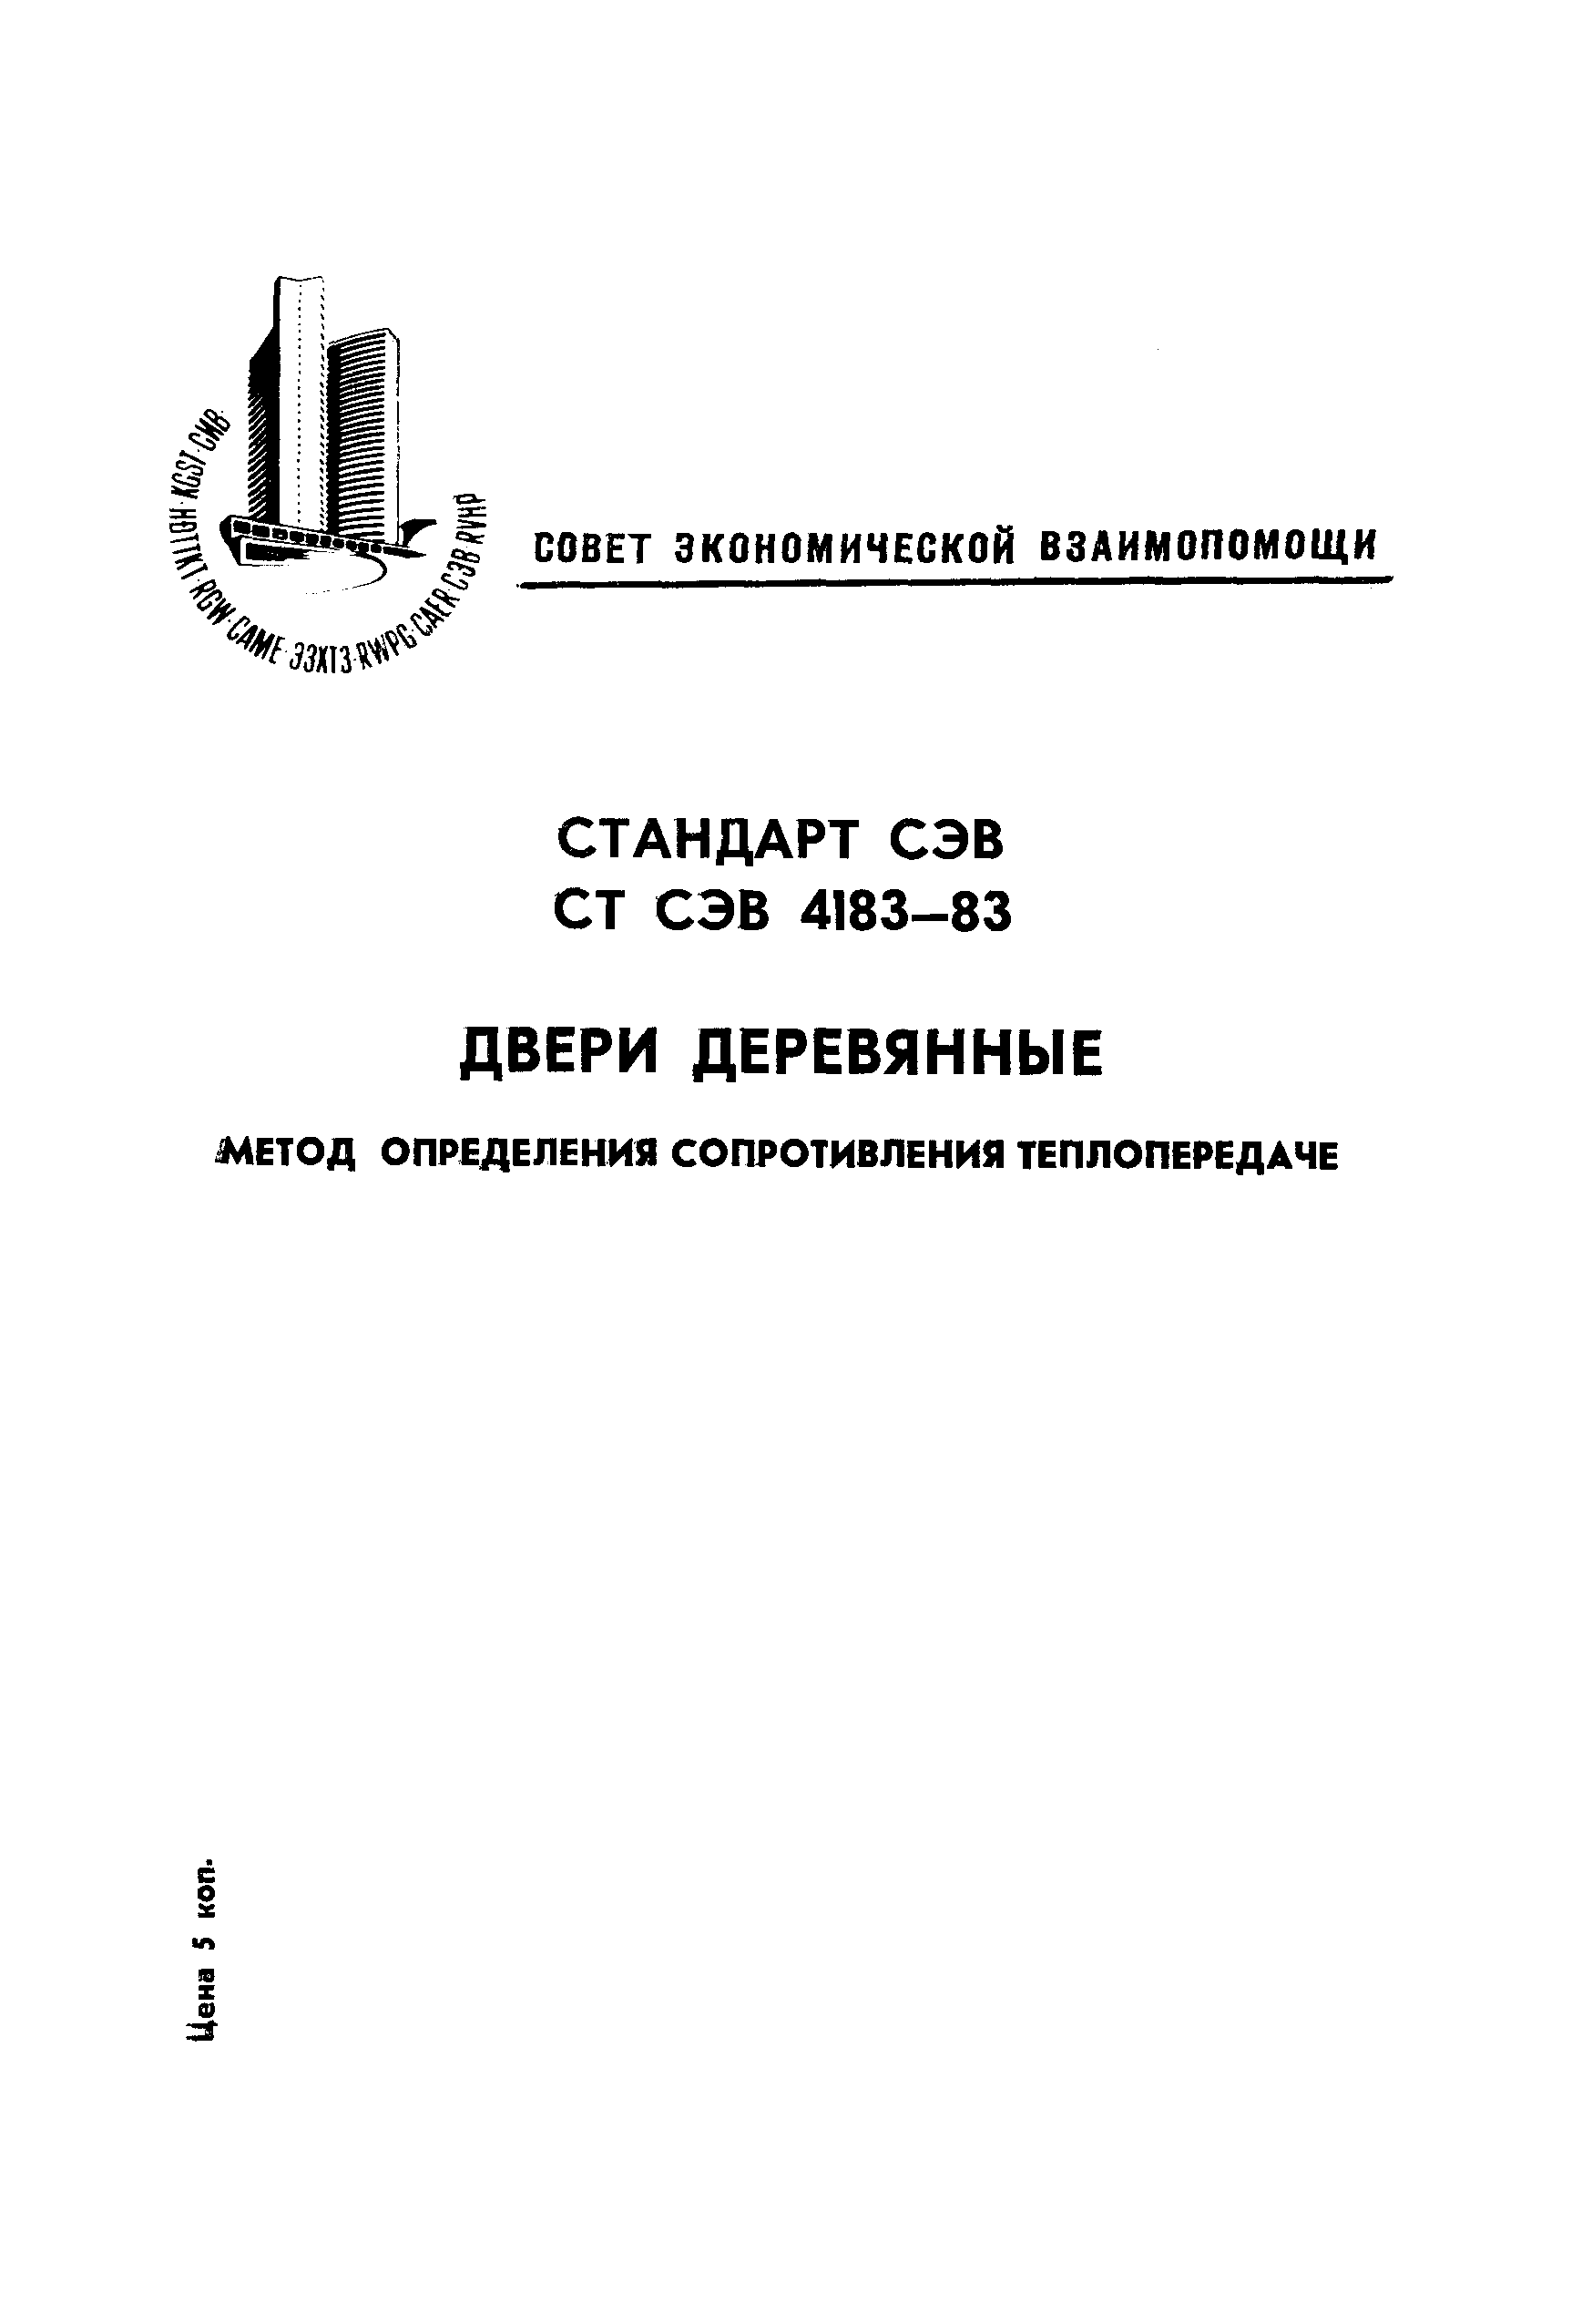 СТ СЭВ 4183-83